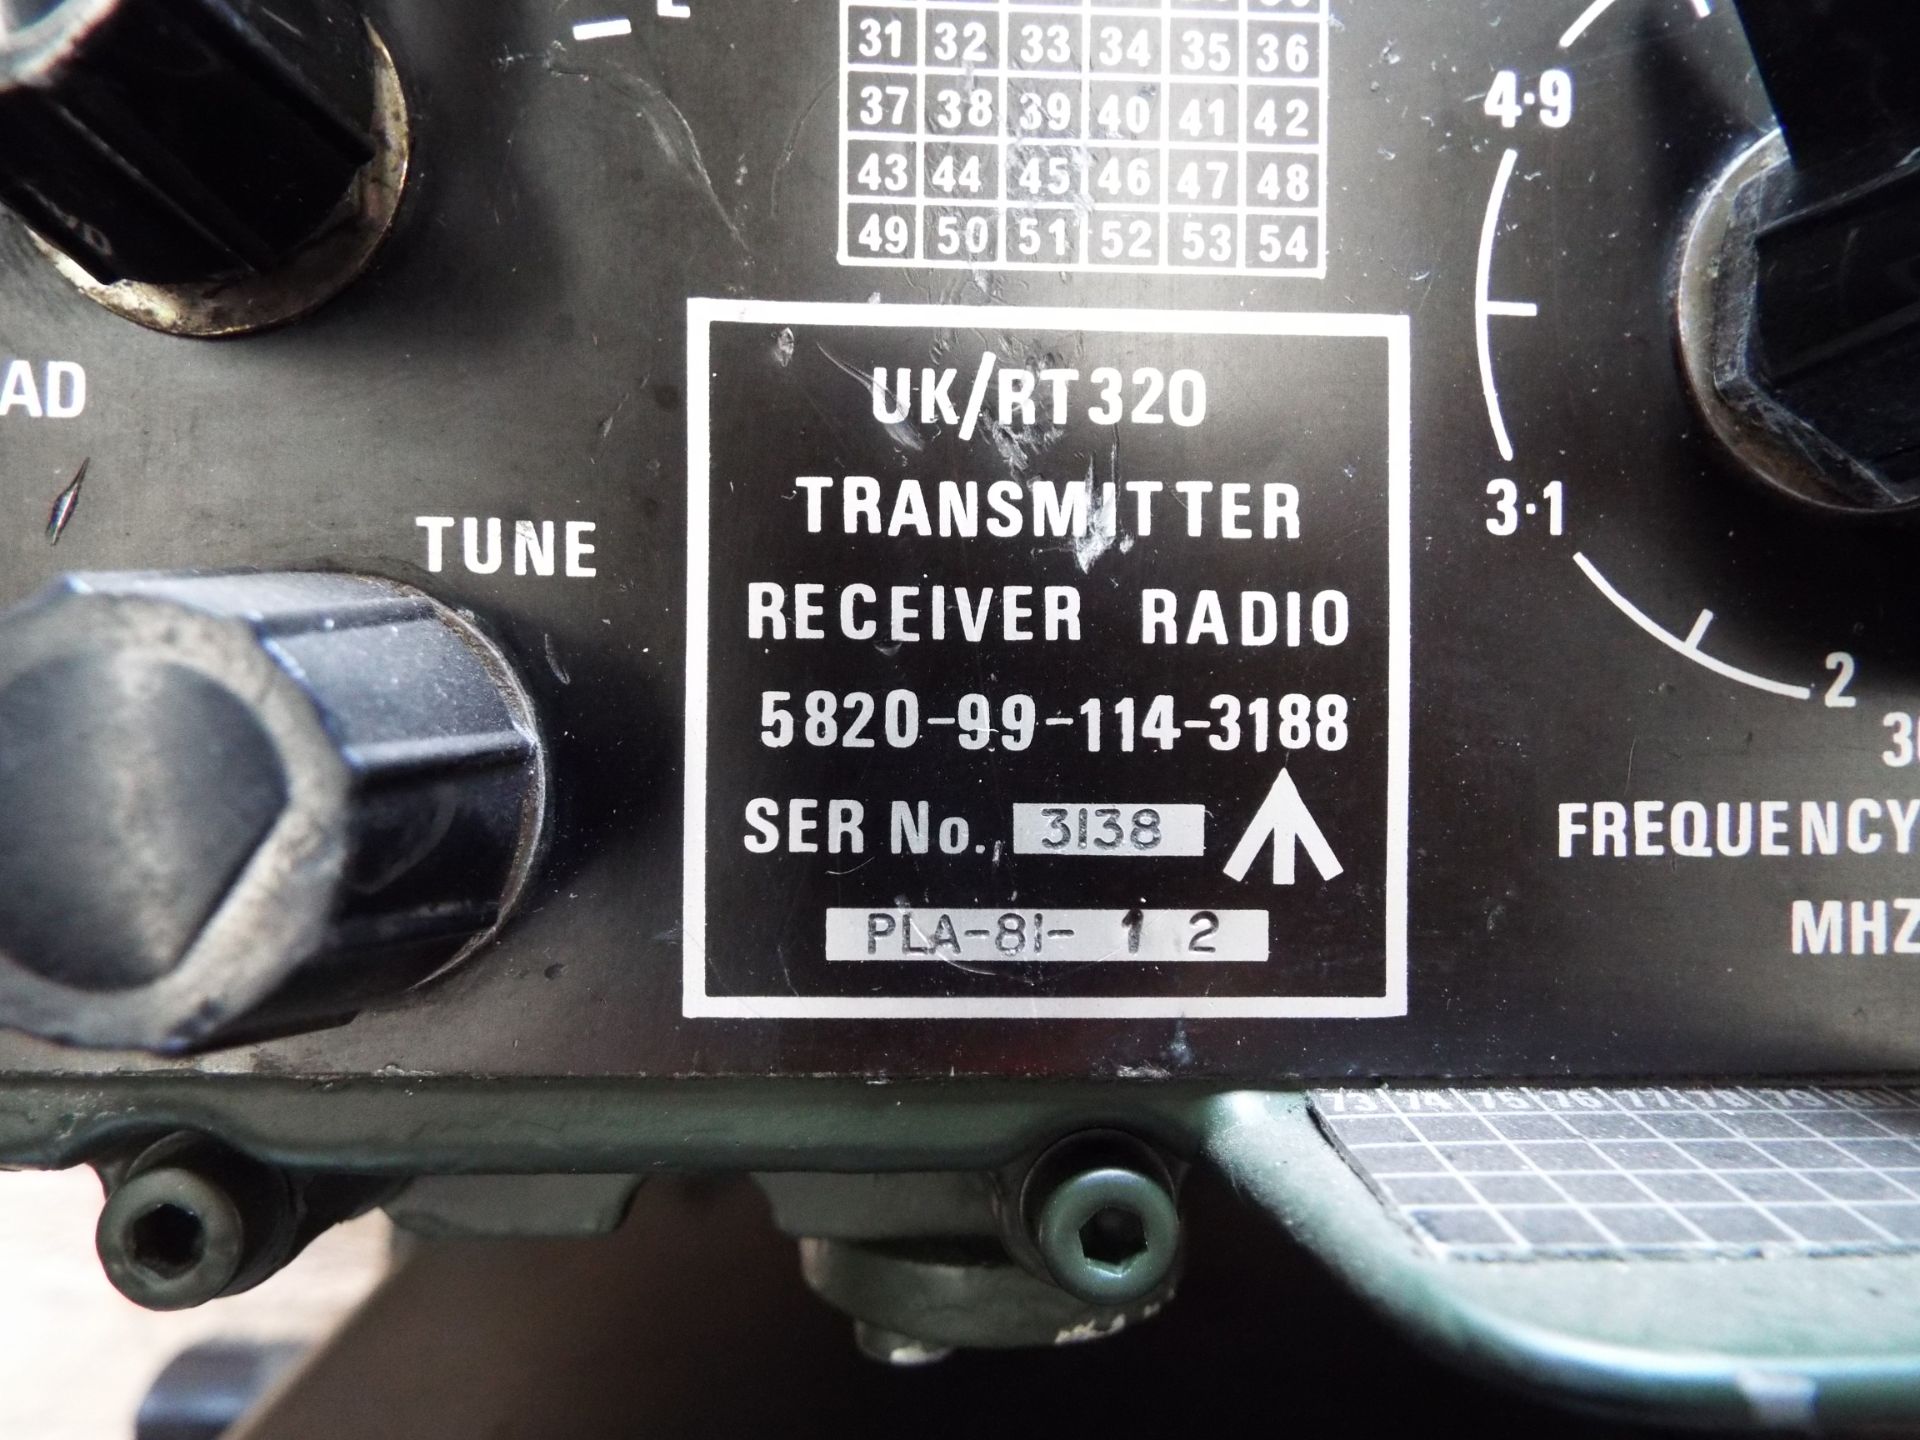 2 x Clansman RT- 320 Radio Transmitter Receivers - Image 5 of 5